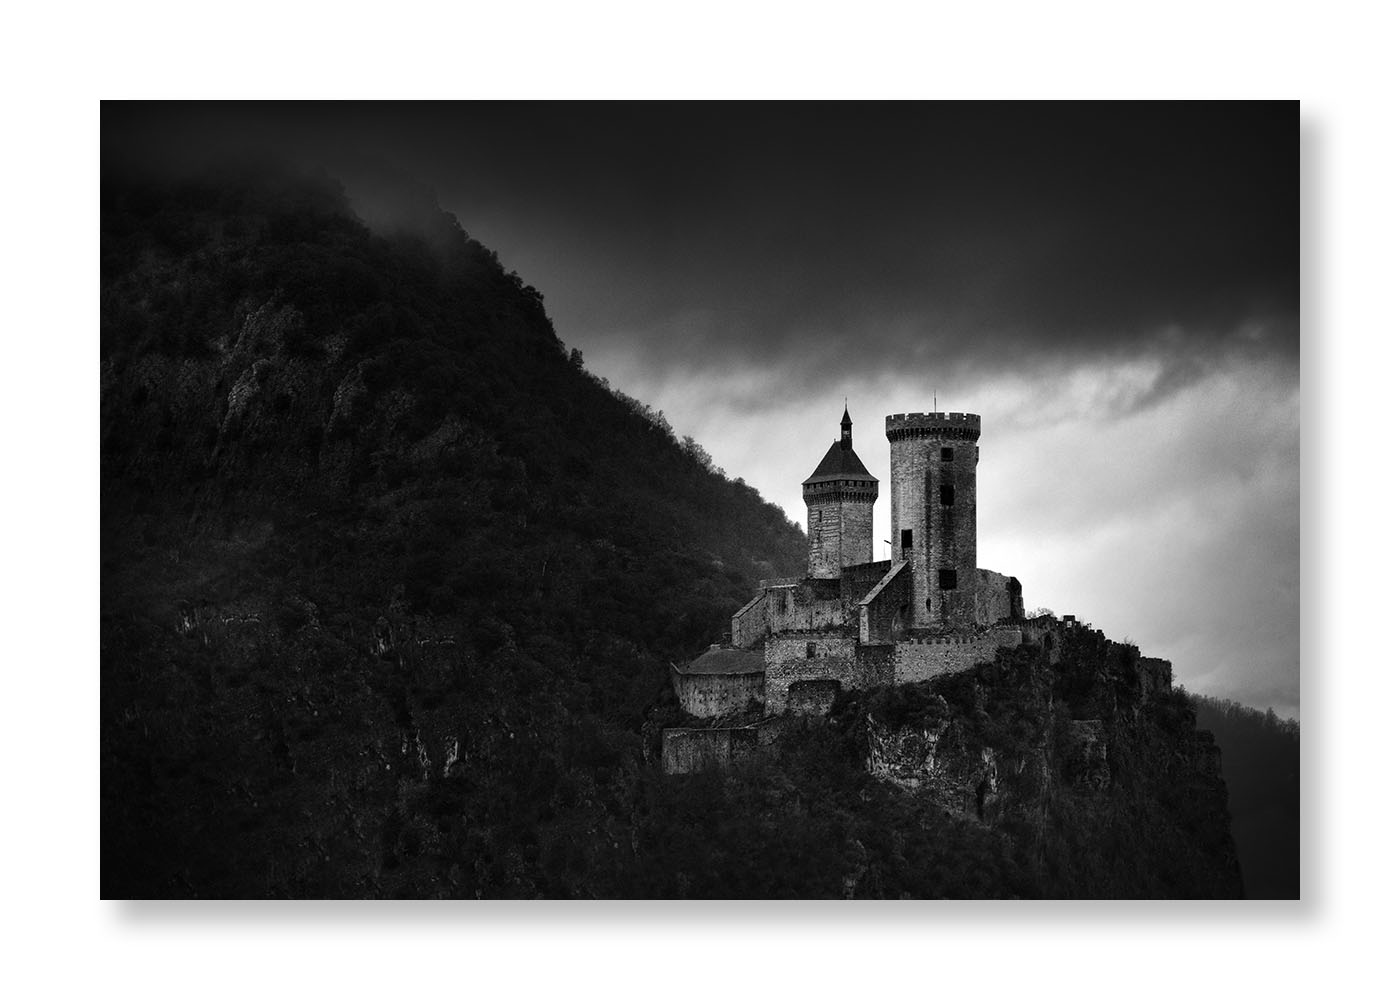 Château de Foix sur son piton rocheux avec un ciel lourd